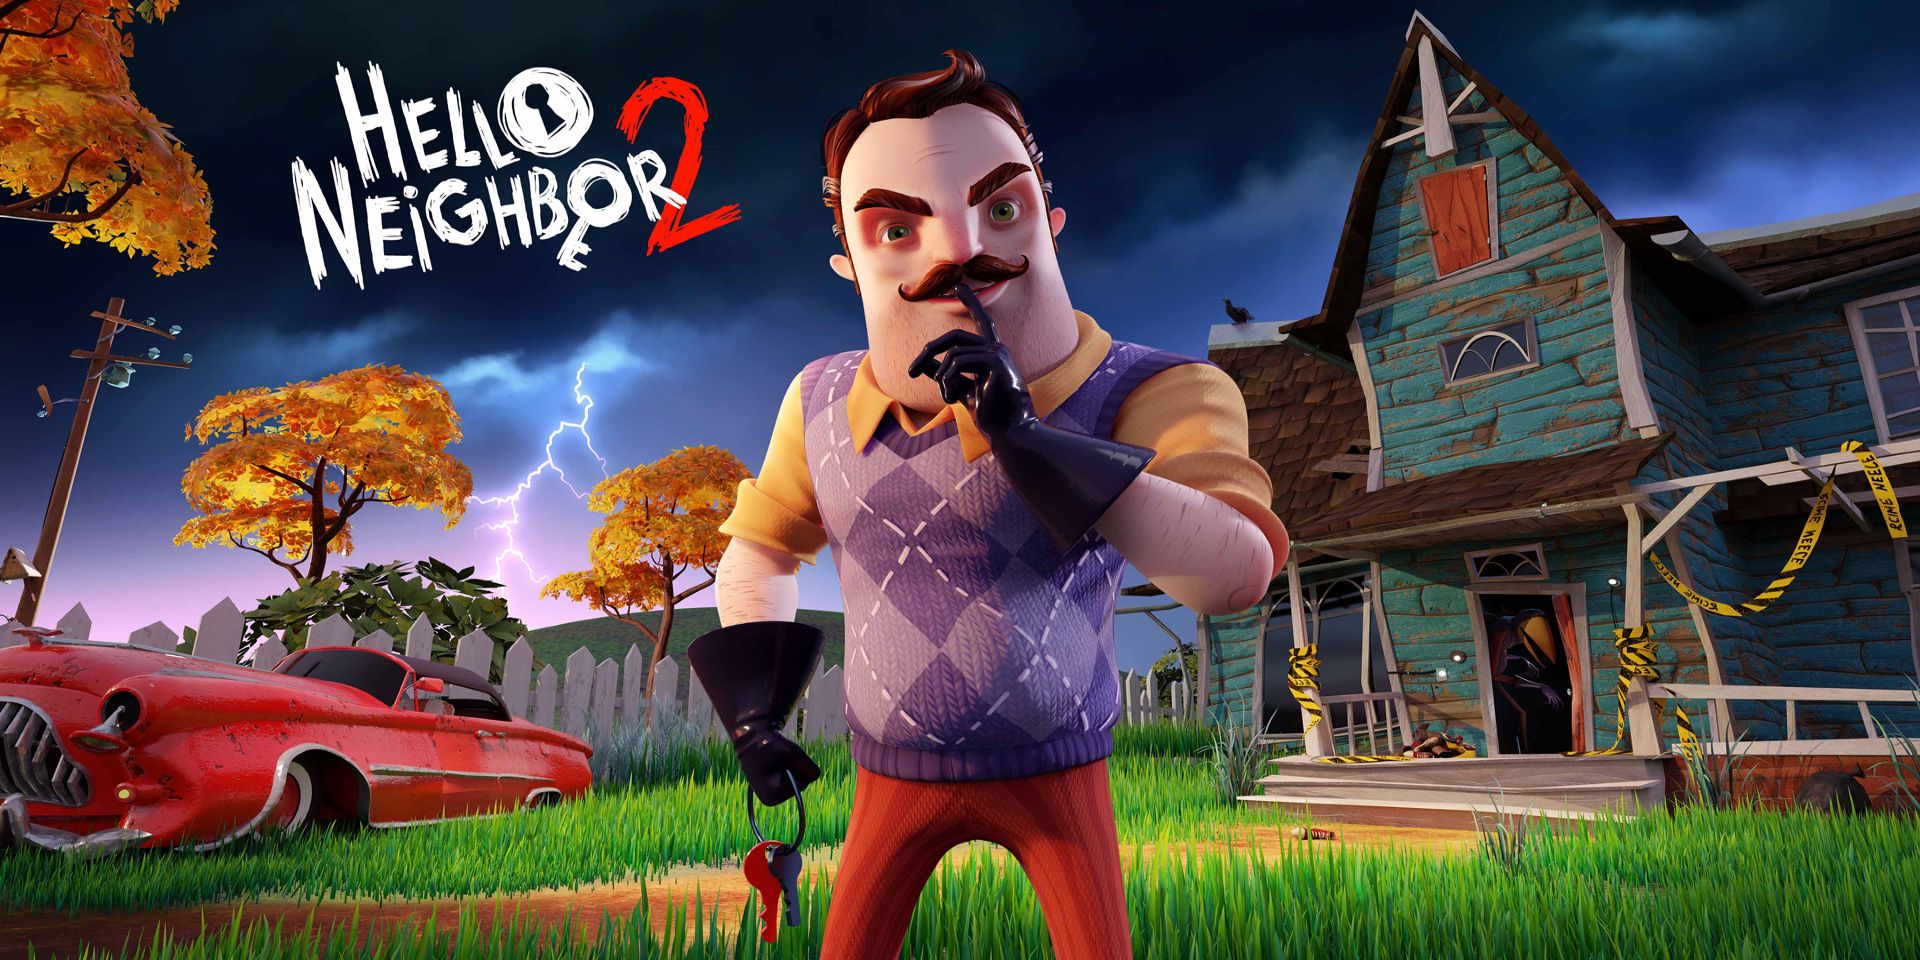 Uma imagem promocional do próximo jogo de terror Hello Neighbor 2